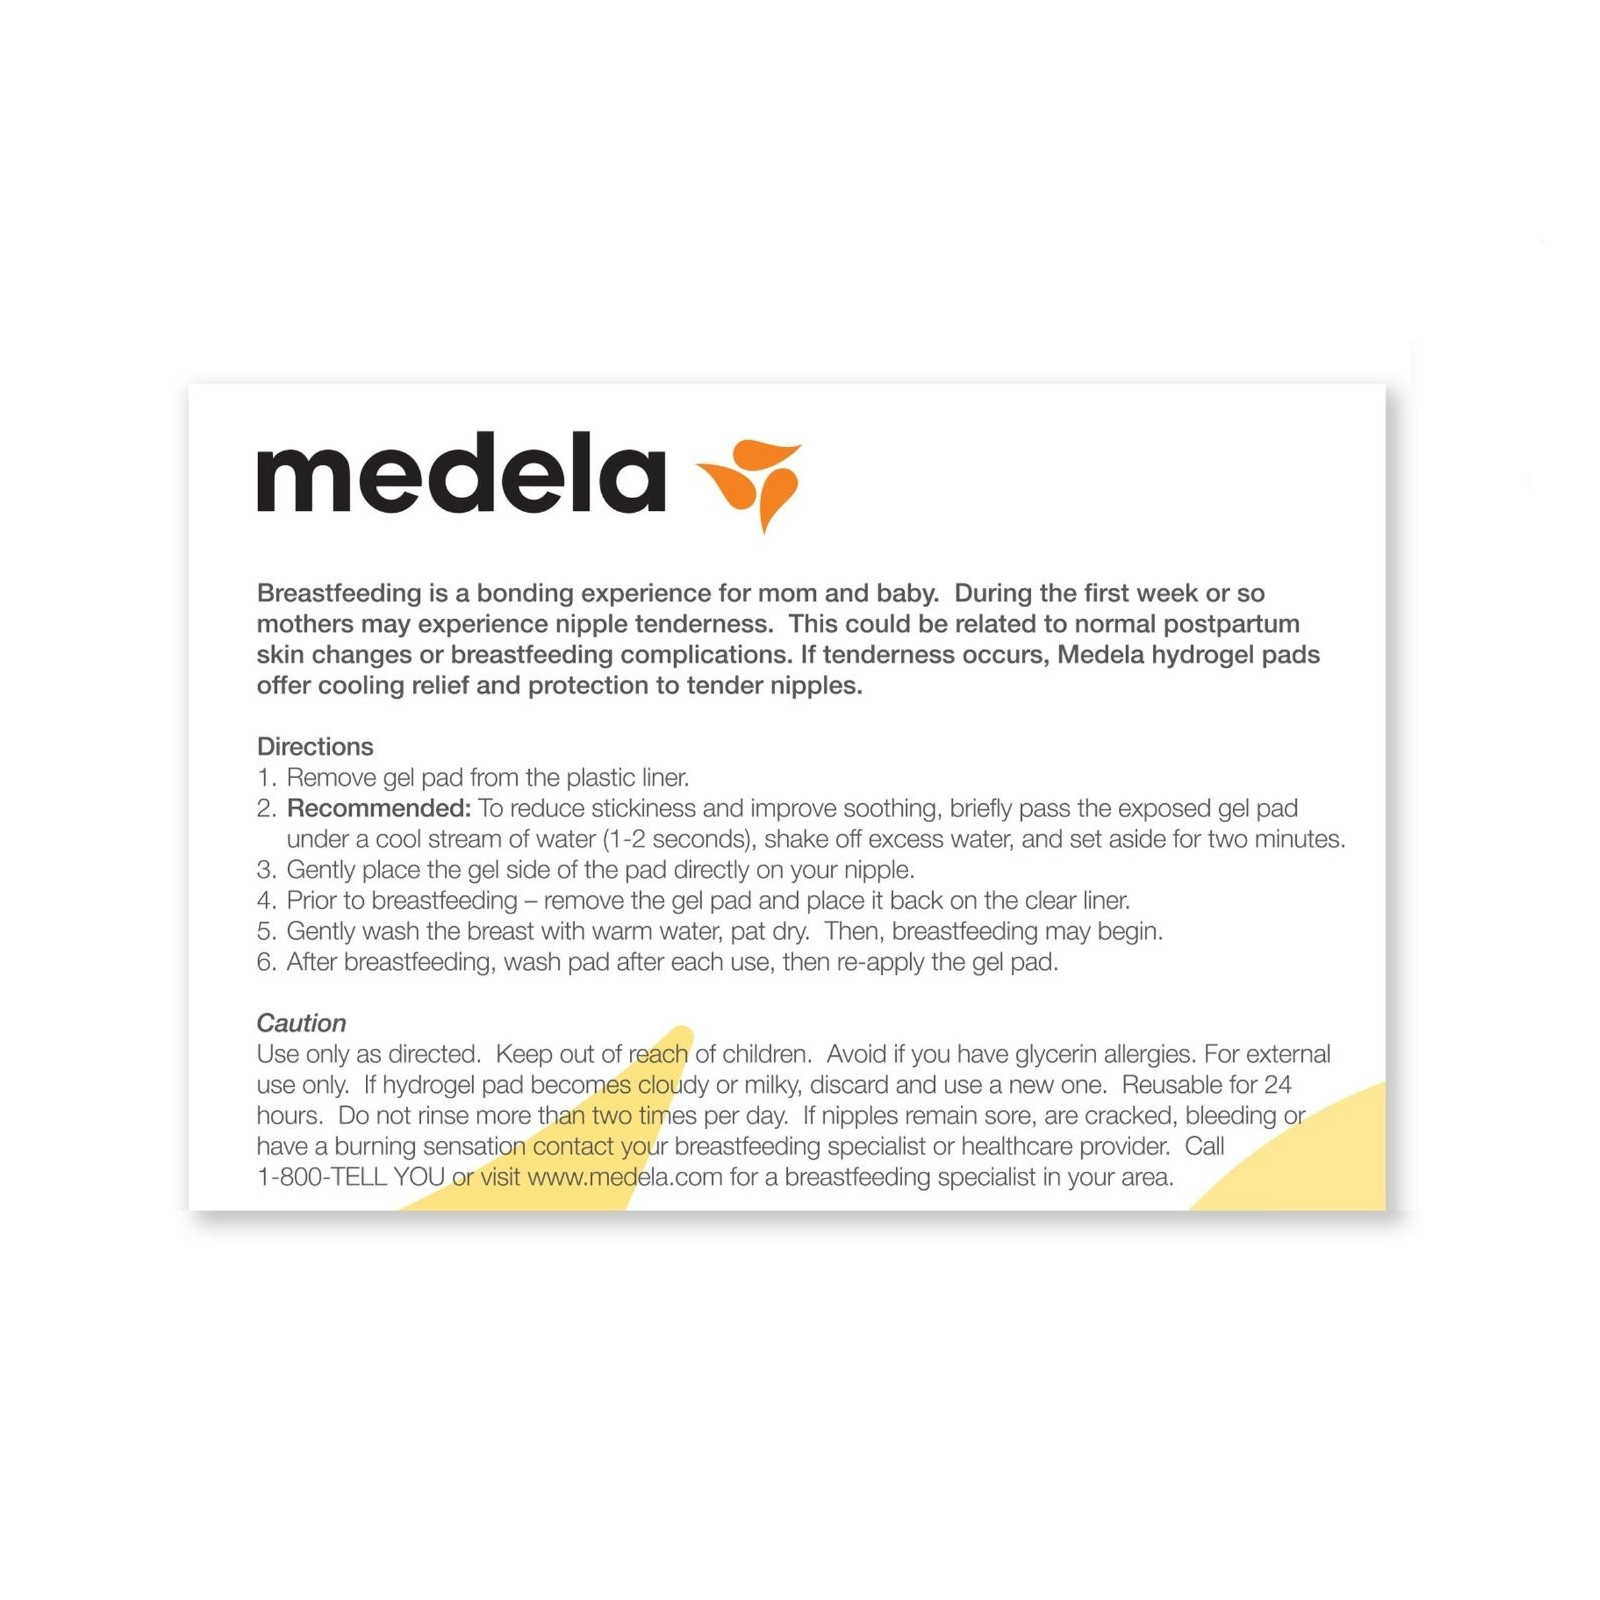 Medela Tender Care Hydrogel Pads - 4 pack 